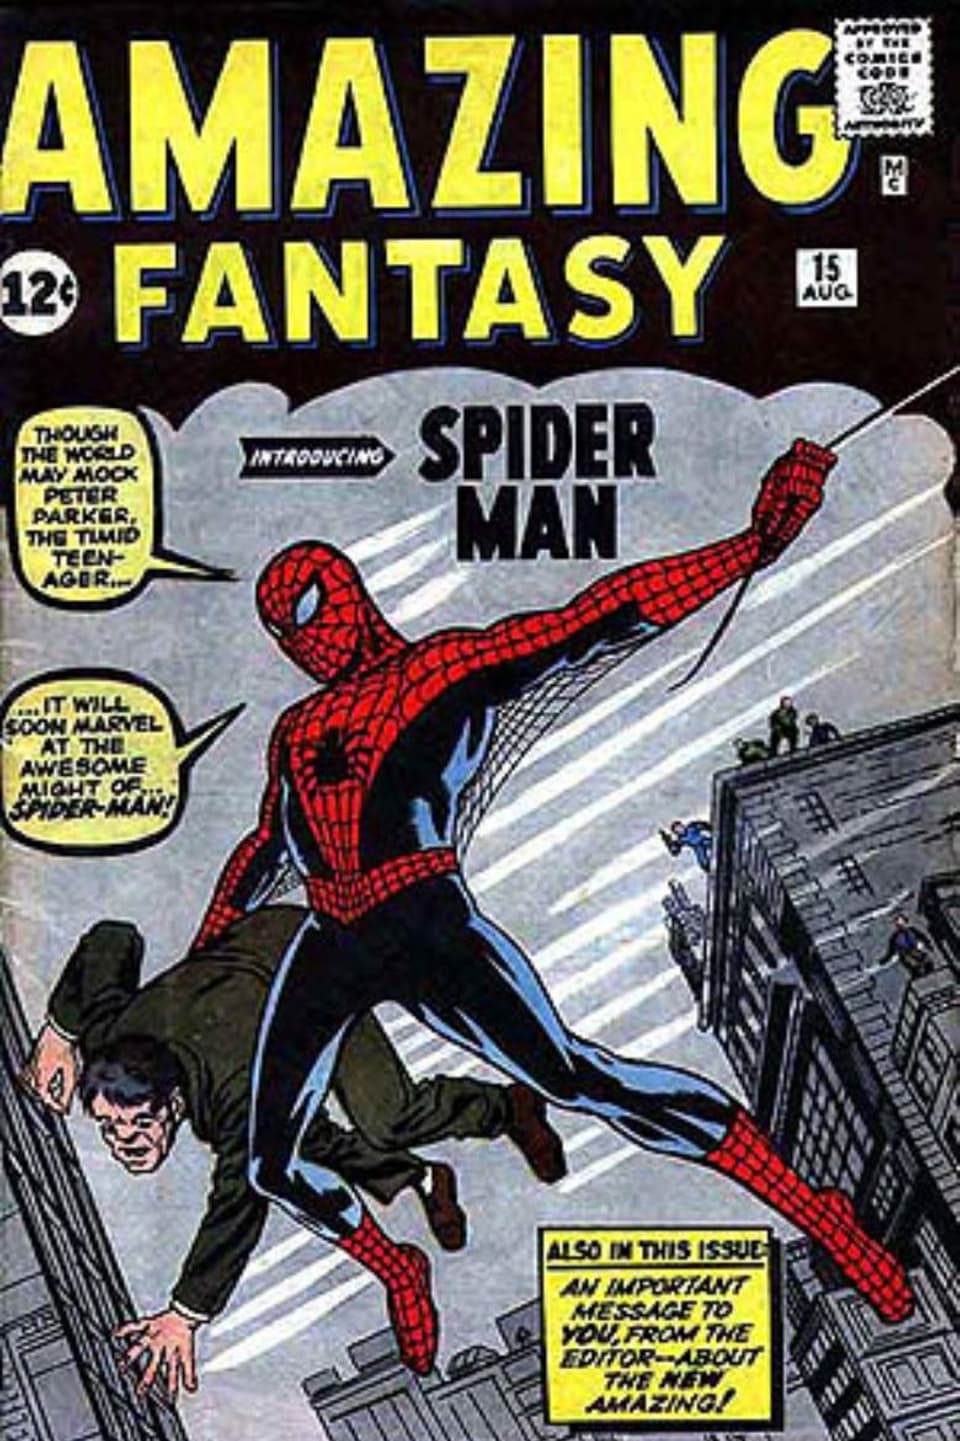 Cover des ersten Spider-Man Comics